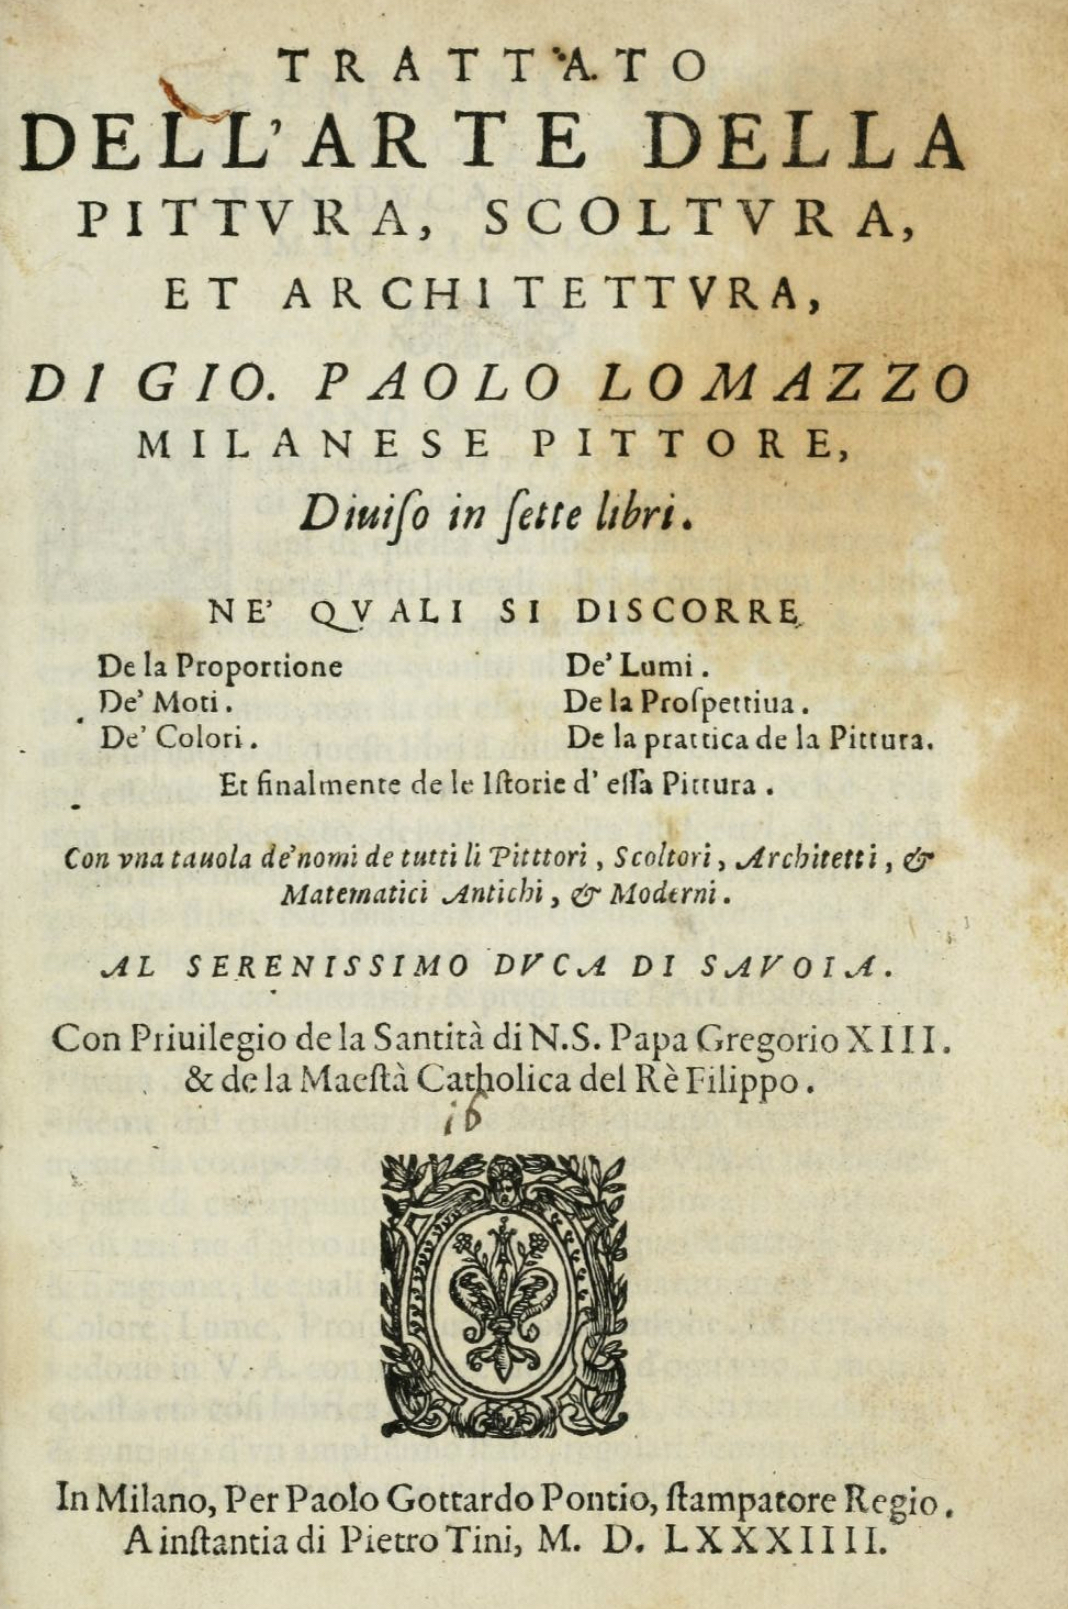 Lamazzo - Trattato dell’Arte della Pittura, Scoltura, et Architettura, 1585 